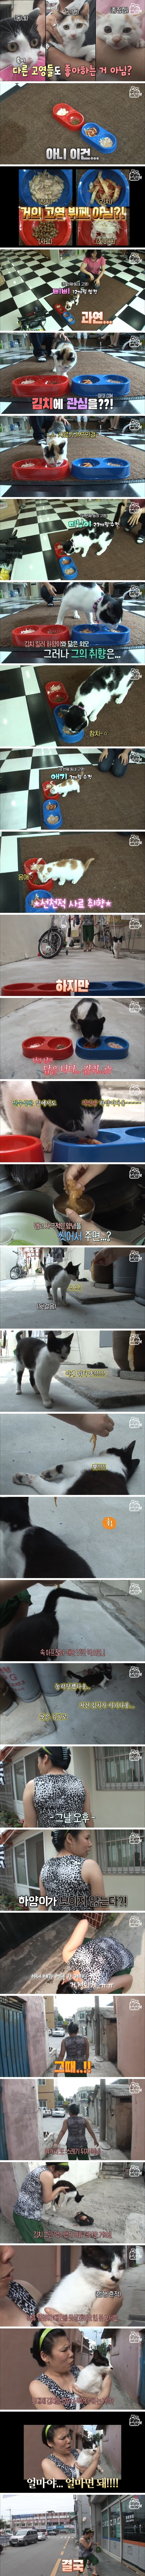 김치에 중독된 고양이 (2).jpg